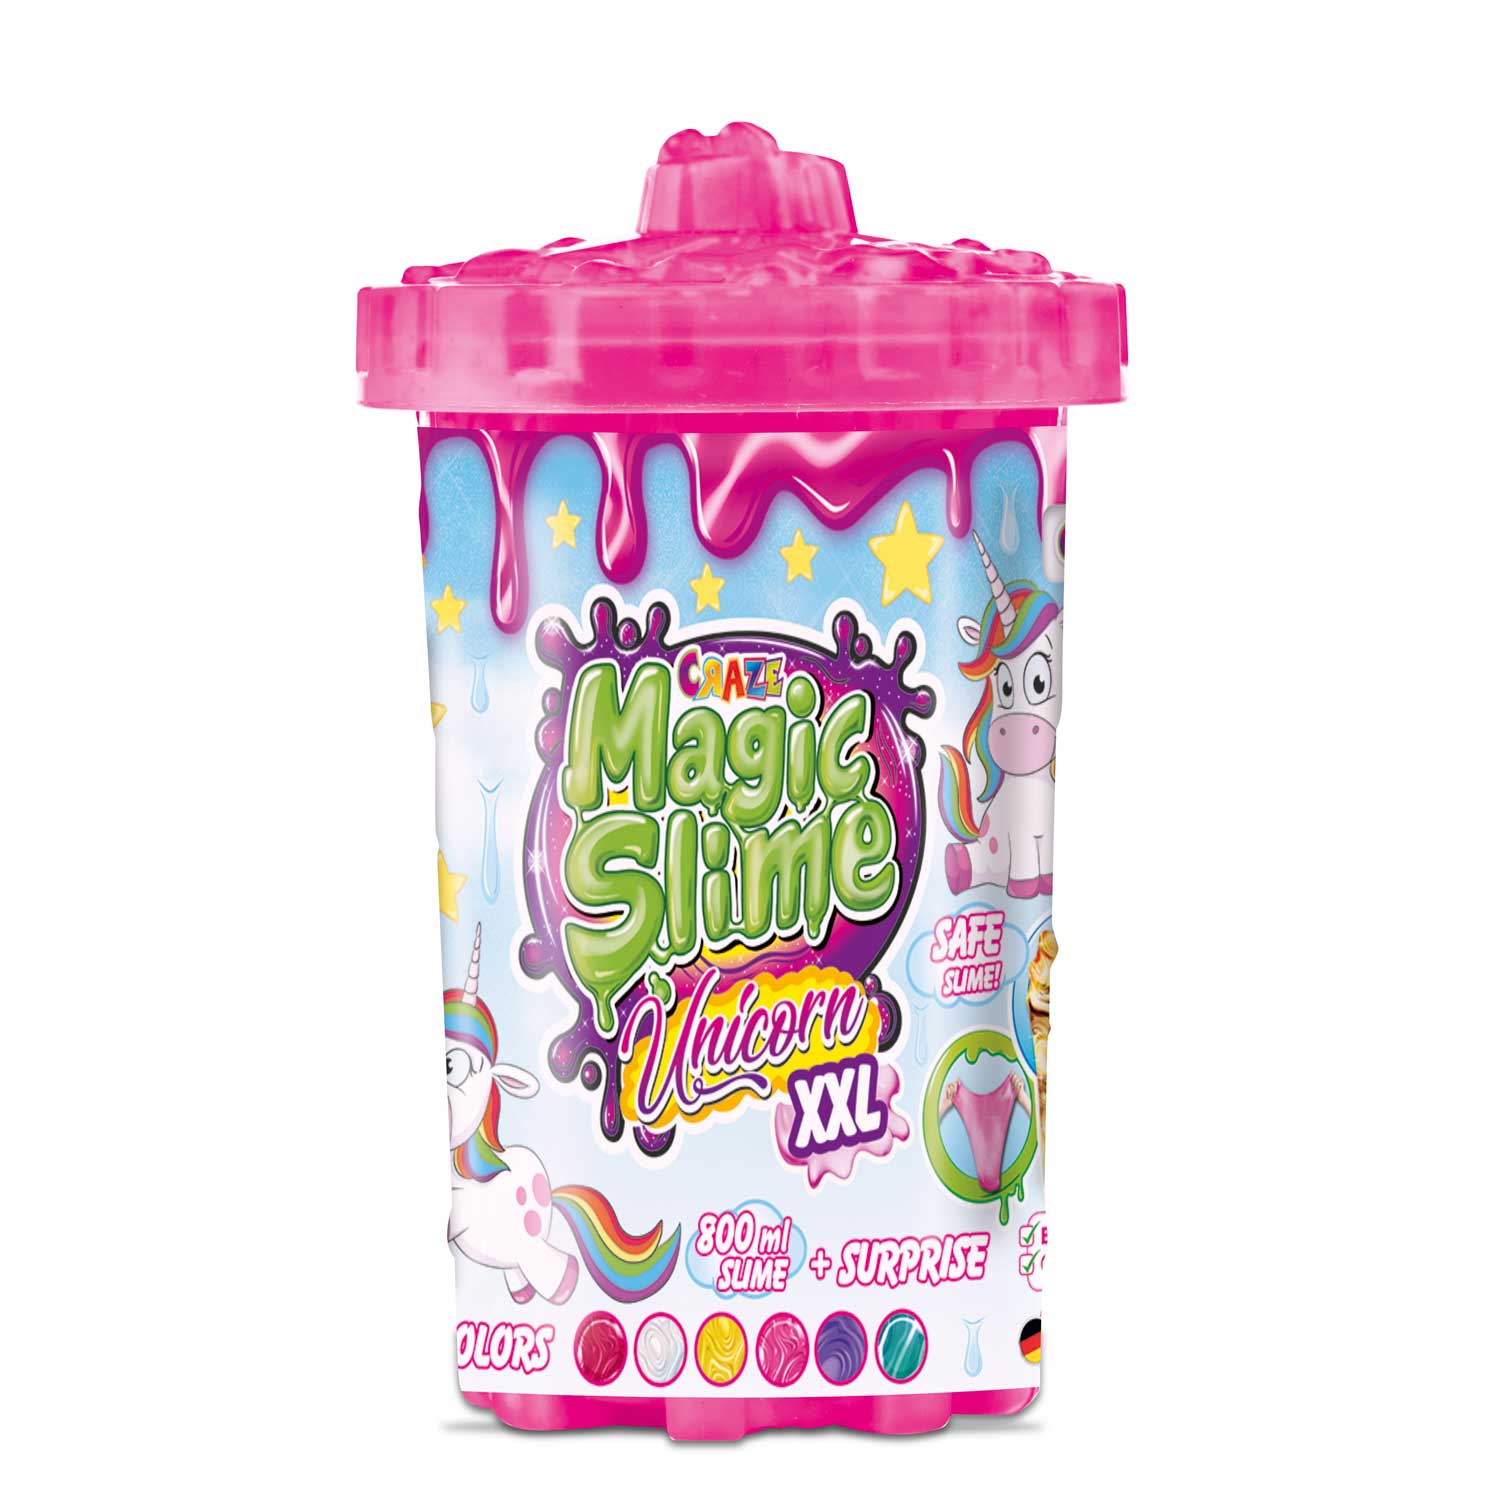 Craze Magic Slime Unicorn Surprise Xxl - M DE WET PROMOTIONS